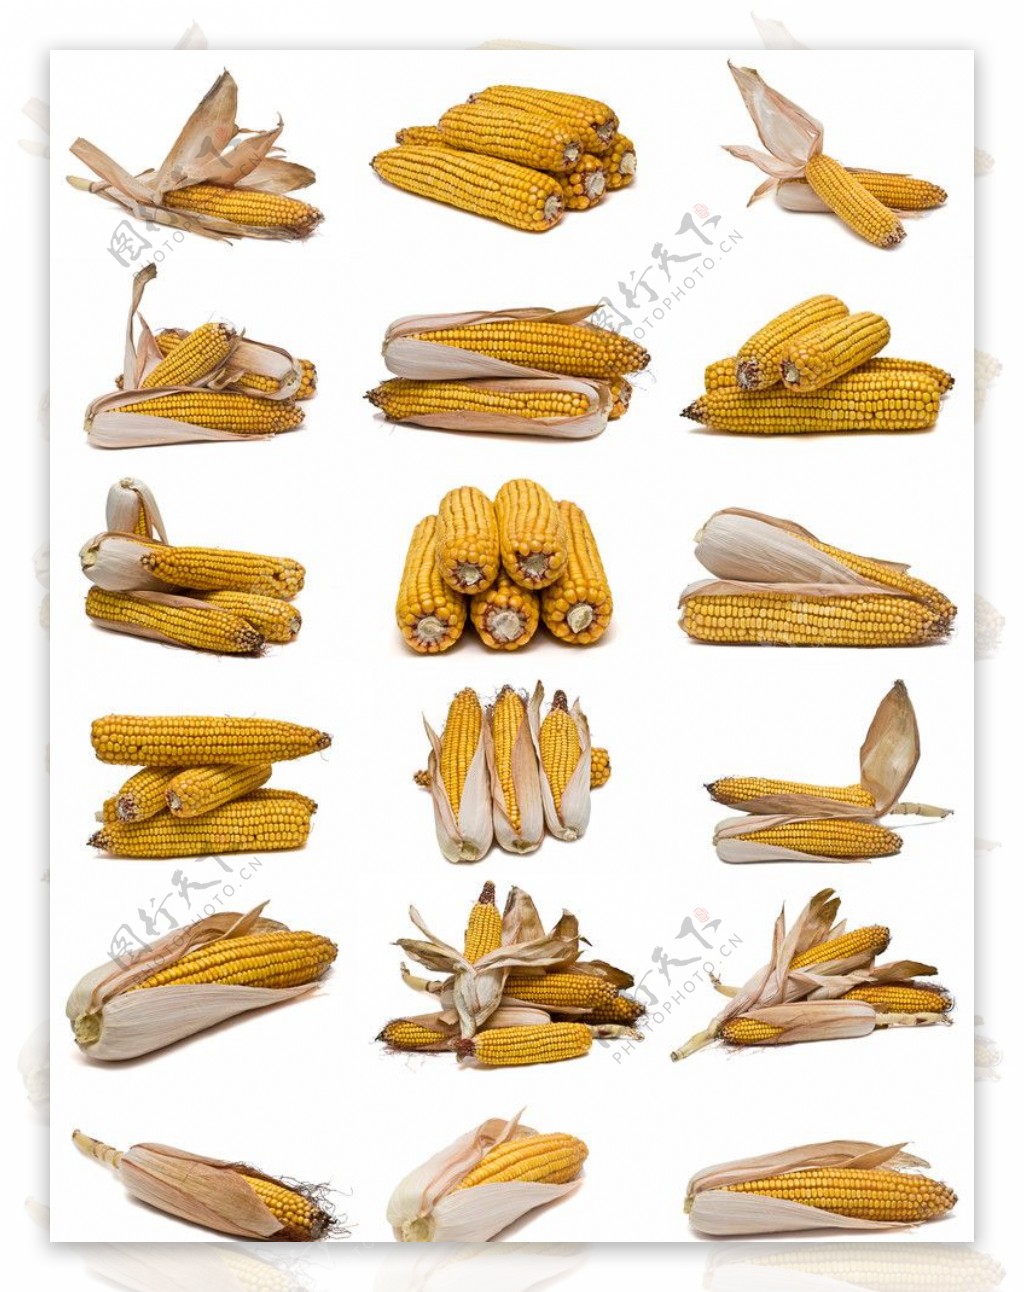 玉米图集图片